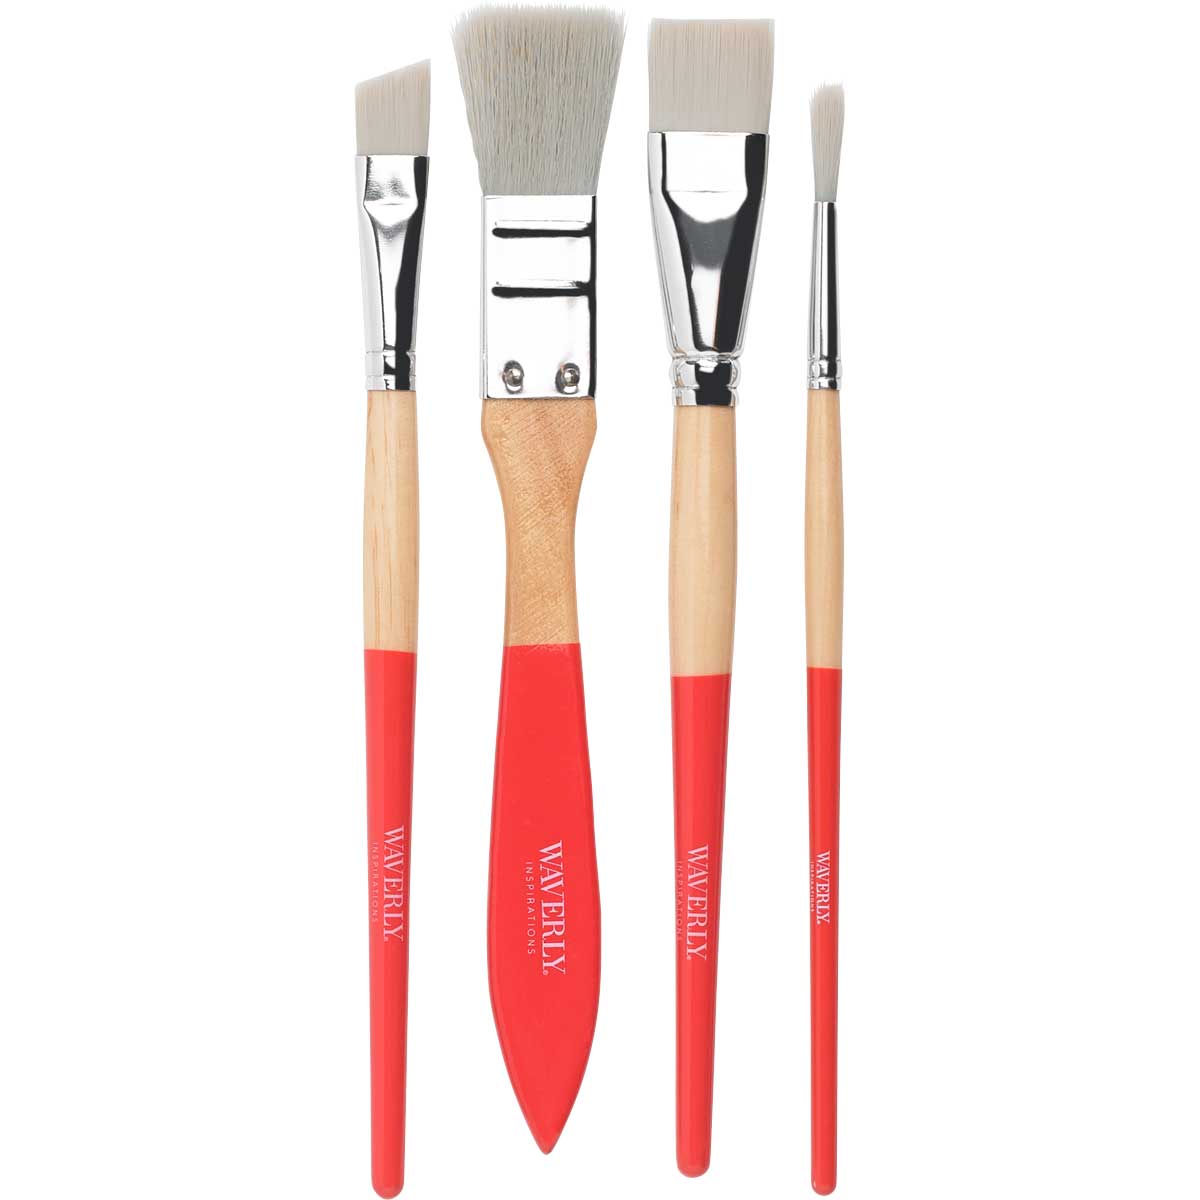 Waverly ® Inspirations Brushes - Basic Set, 4 pc. - 60541E